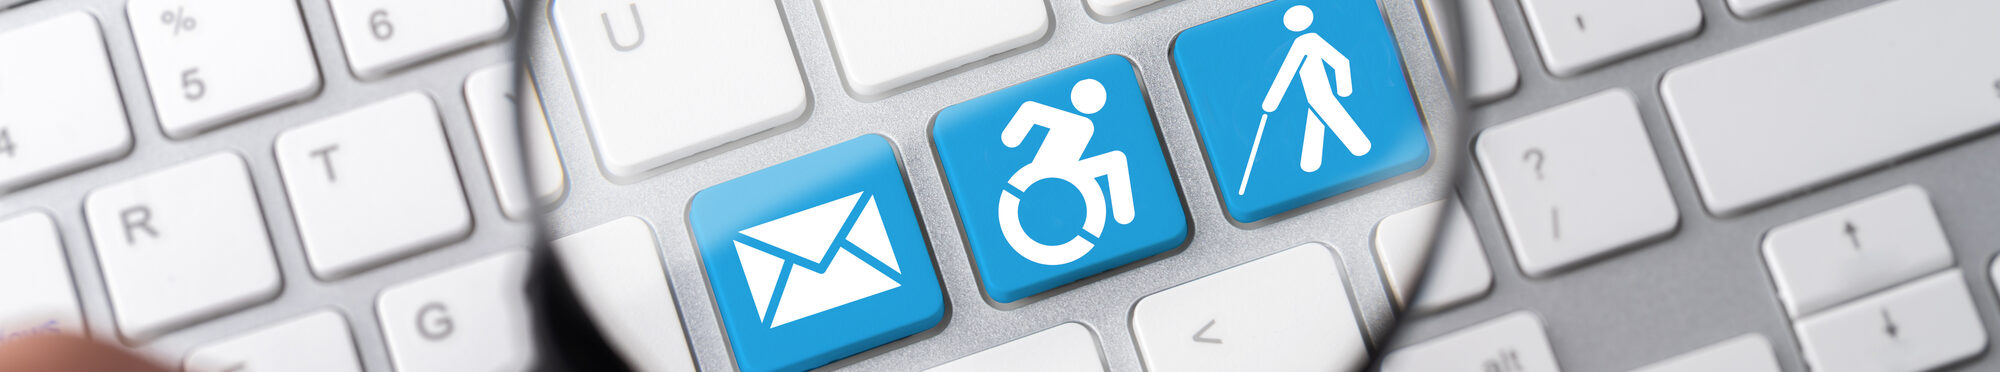 Auf einer Tastatur werden durch eine Lupe verschiedene Symbole für Behinderungen angeschaut